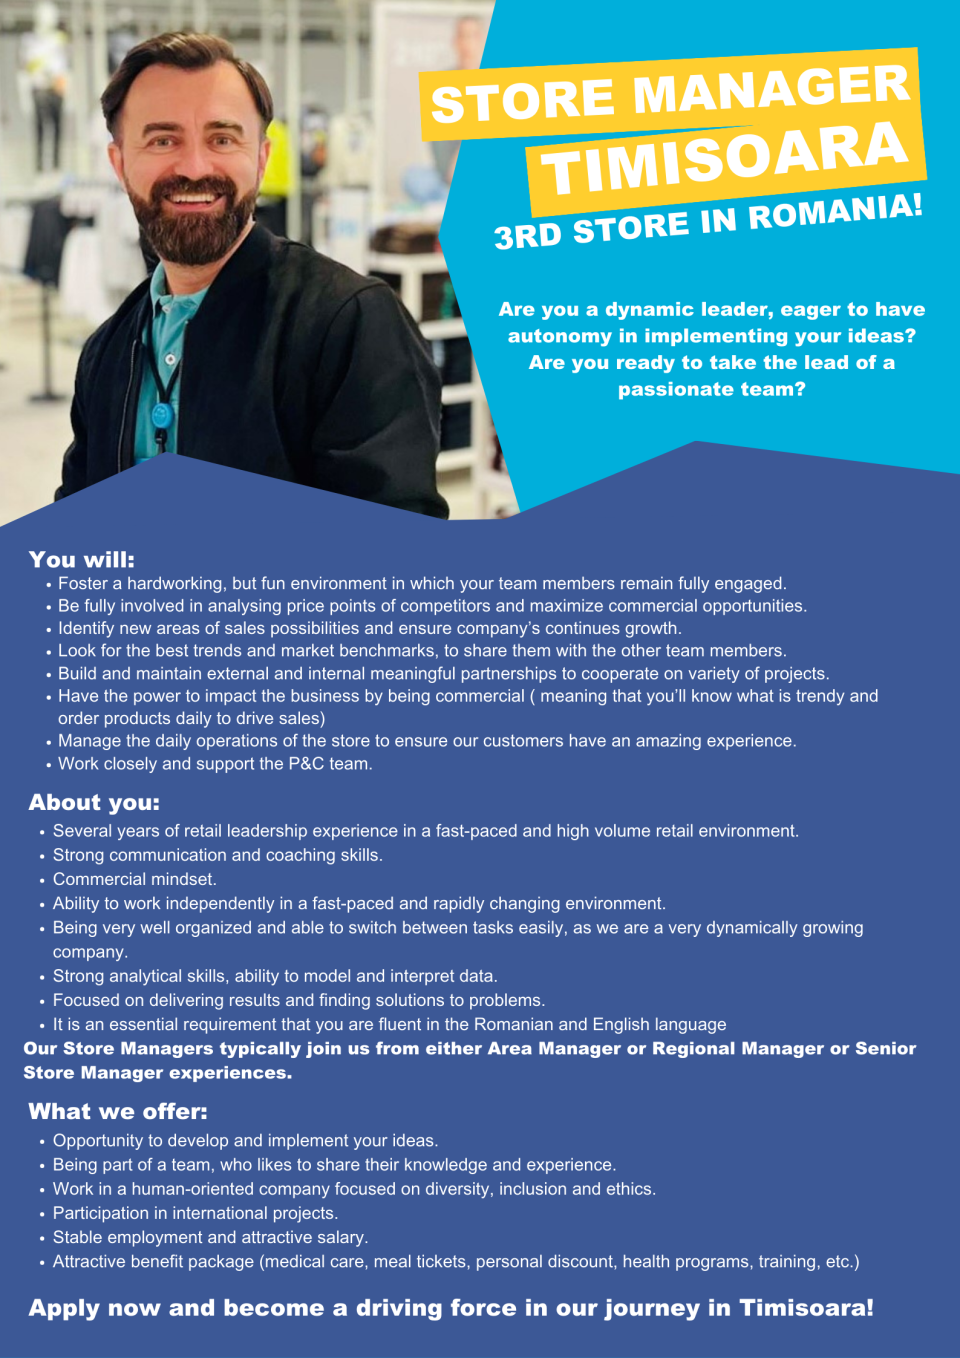 Store Manager - Primark Timisoara